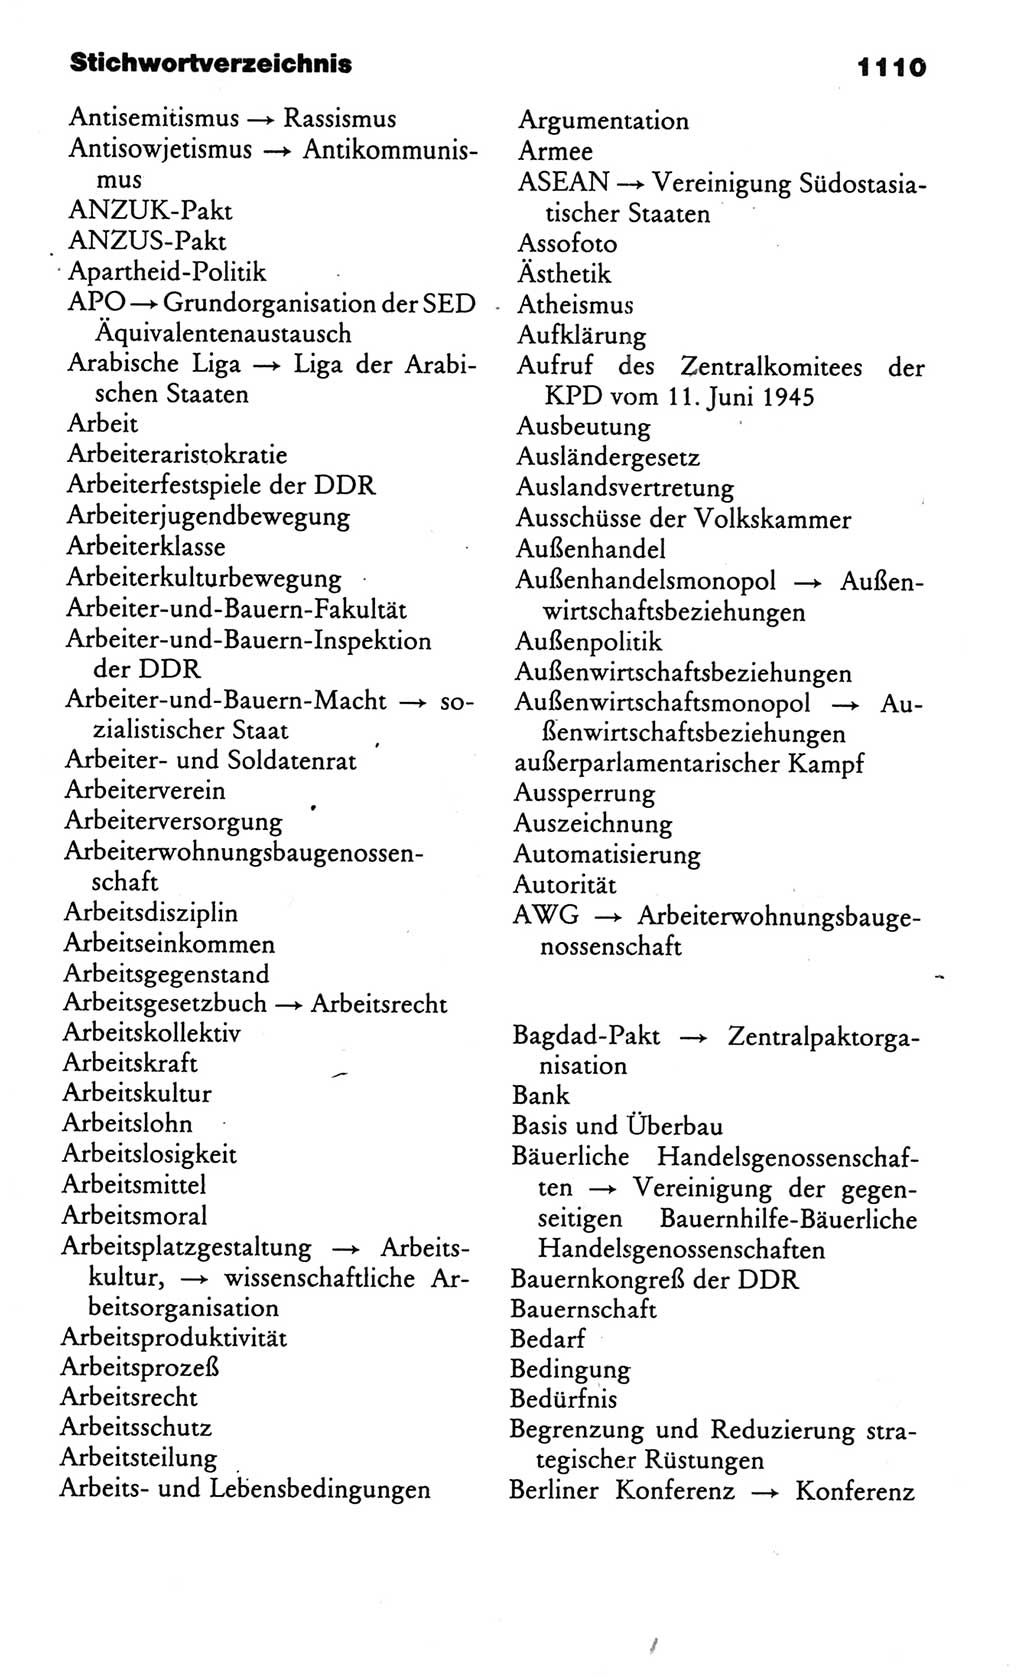 Kleines politisches Wörterbuch [Deutsche Demokratische Republik (DDR)] 1986, Seite 1110 (Kl. pol. Wb. DDR 1986, S. 1110)